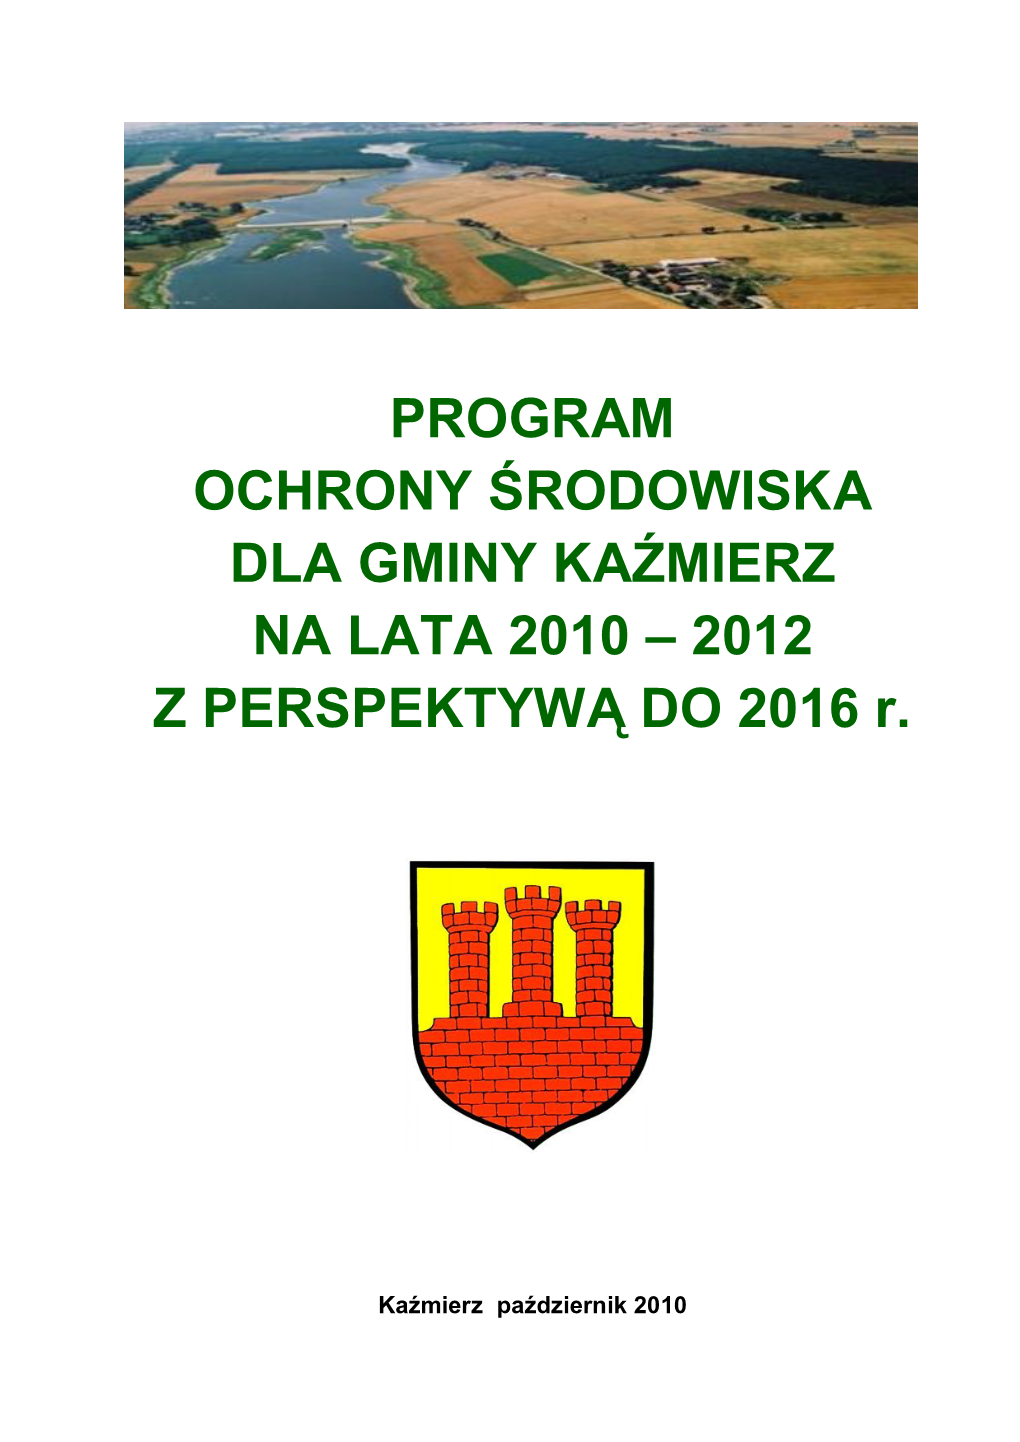 PROGRAM OCHRONY ŚRODOWISKA DLA GMINY KAŹMIERZ NA LATA 2010 – 2012 Z PERSPEKTYWĄ DO 2016 R